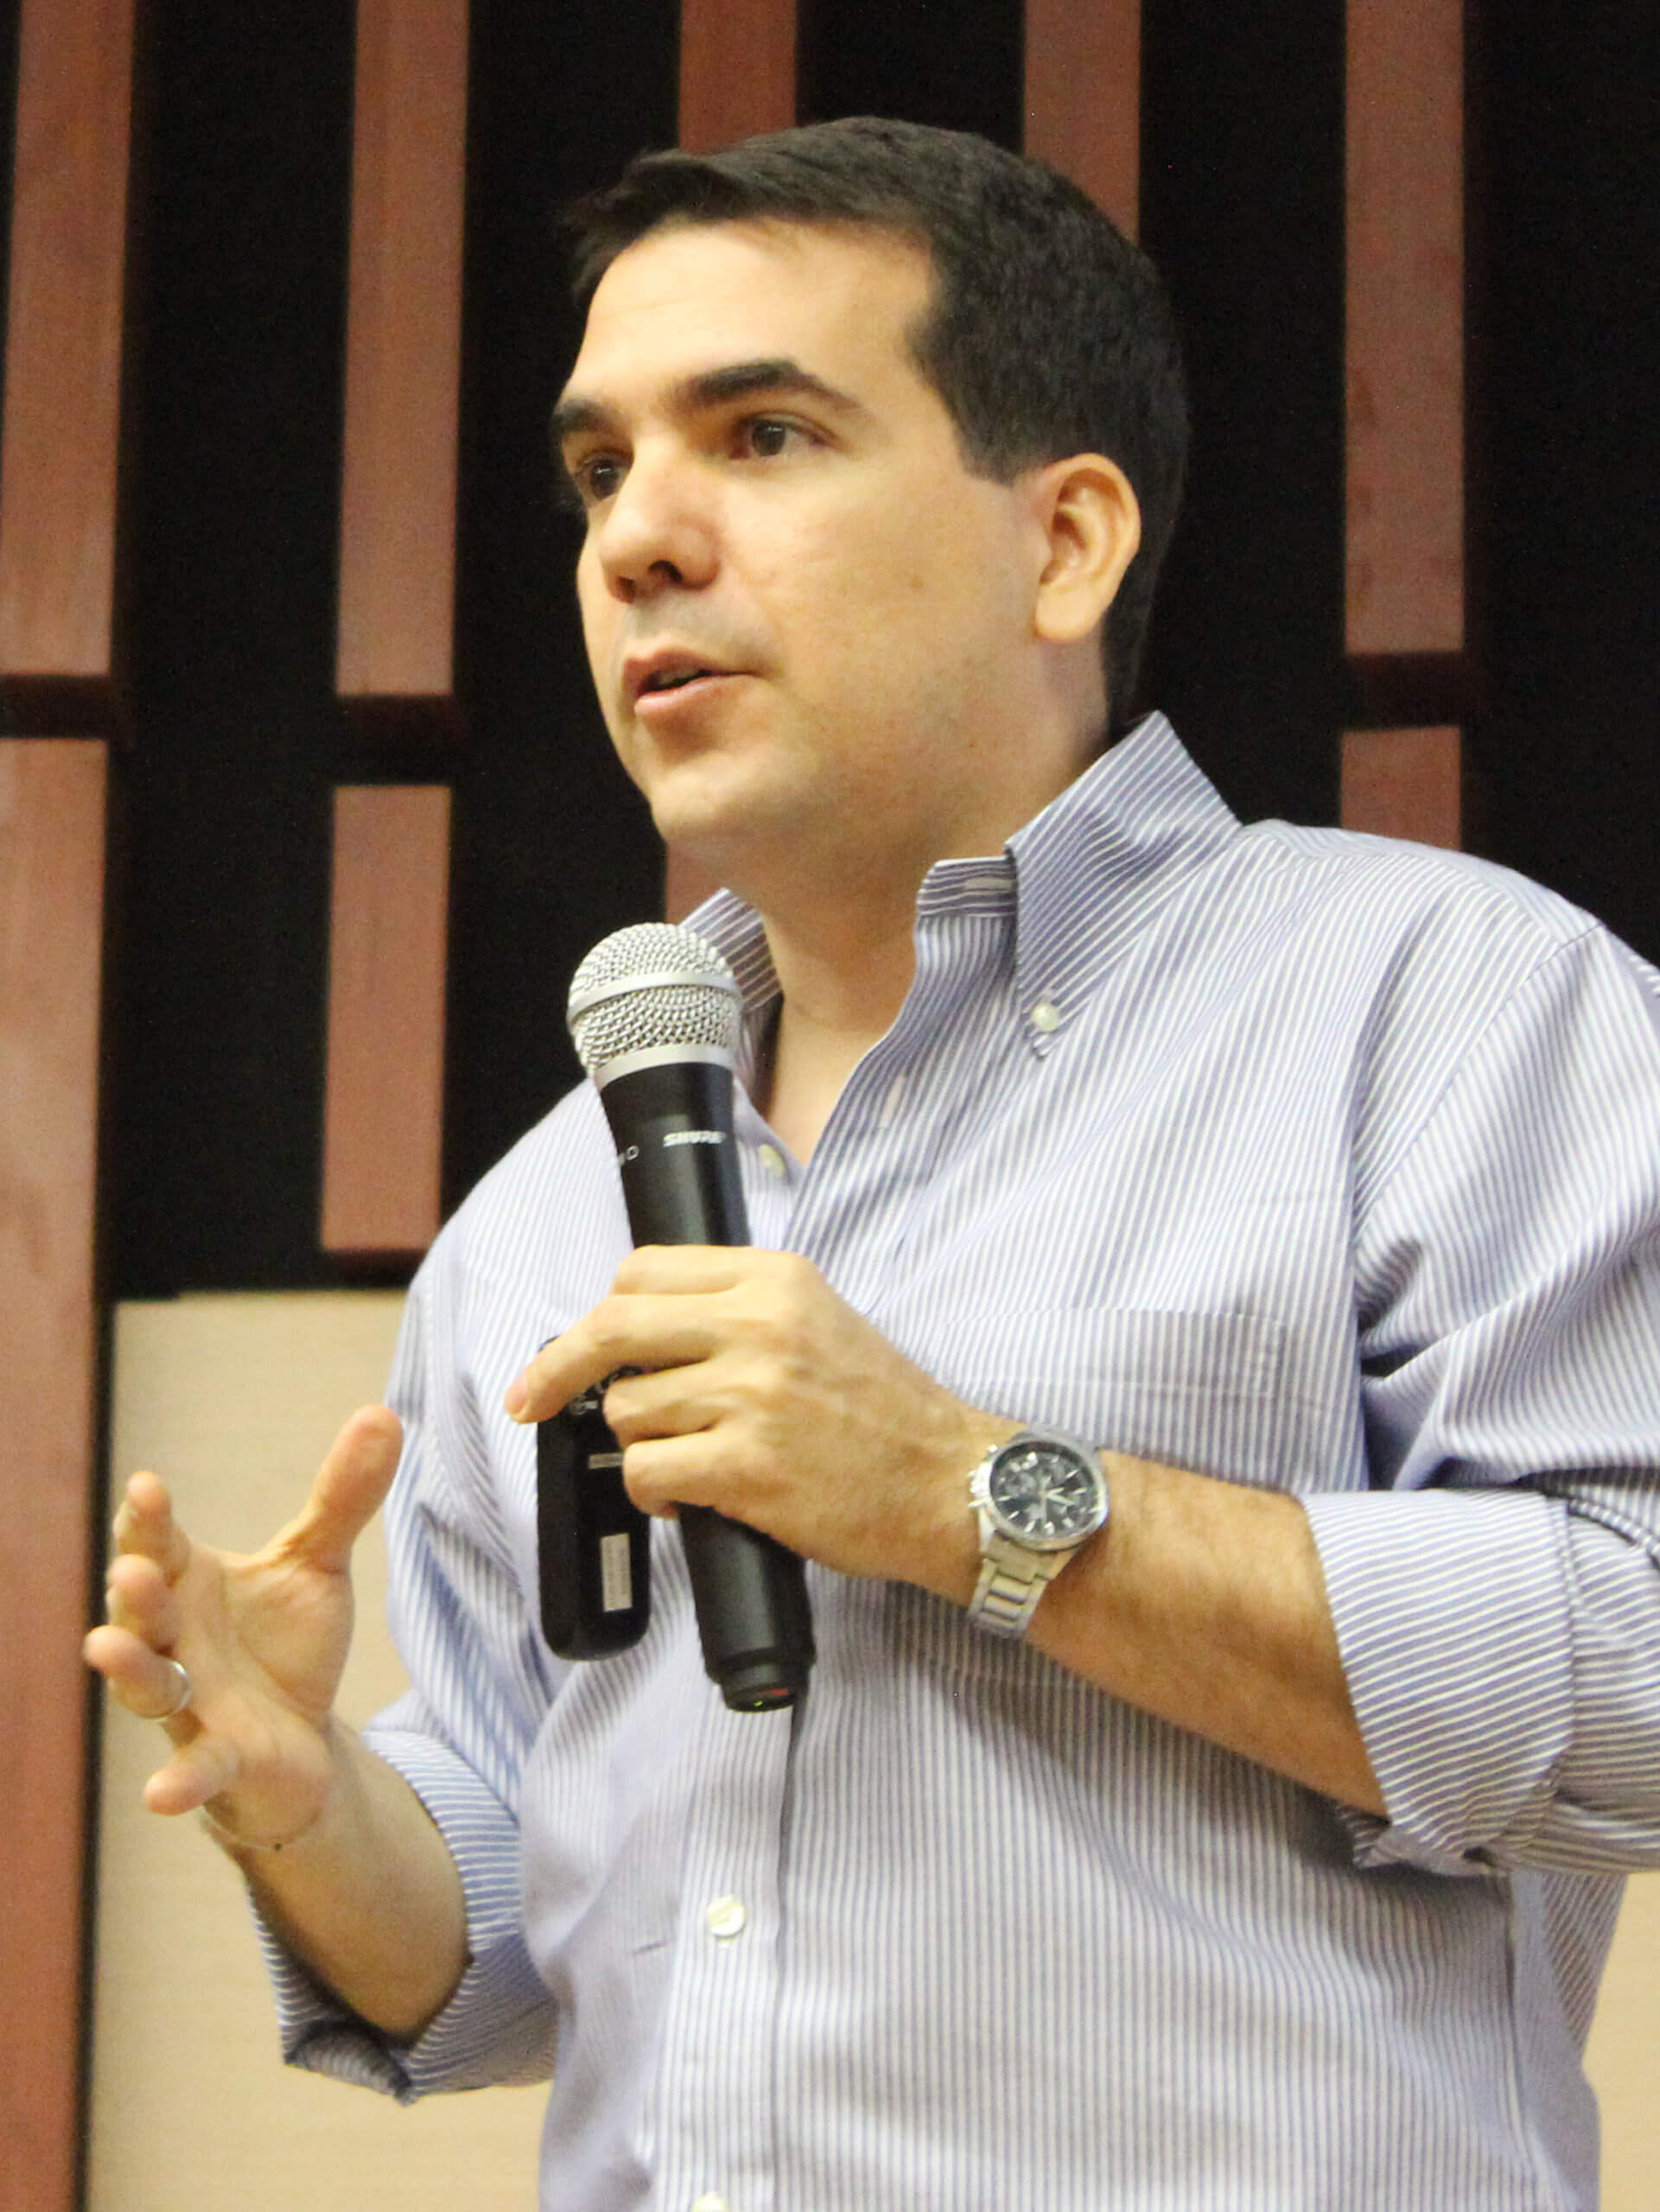 Felipe Beltrán, mentor, coach y speaker colombiano